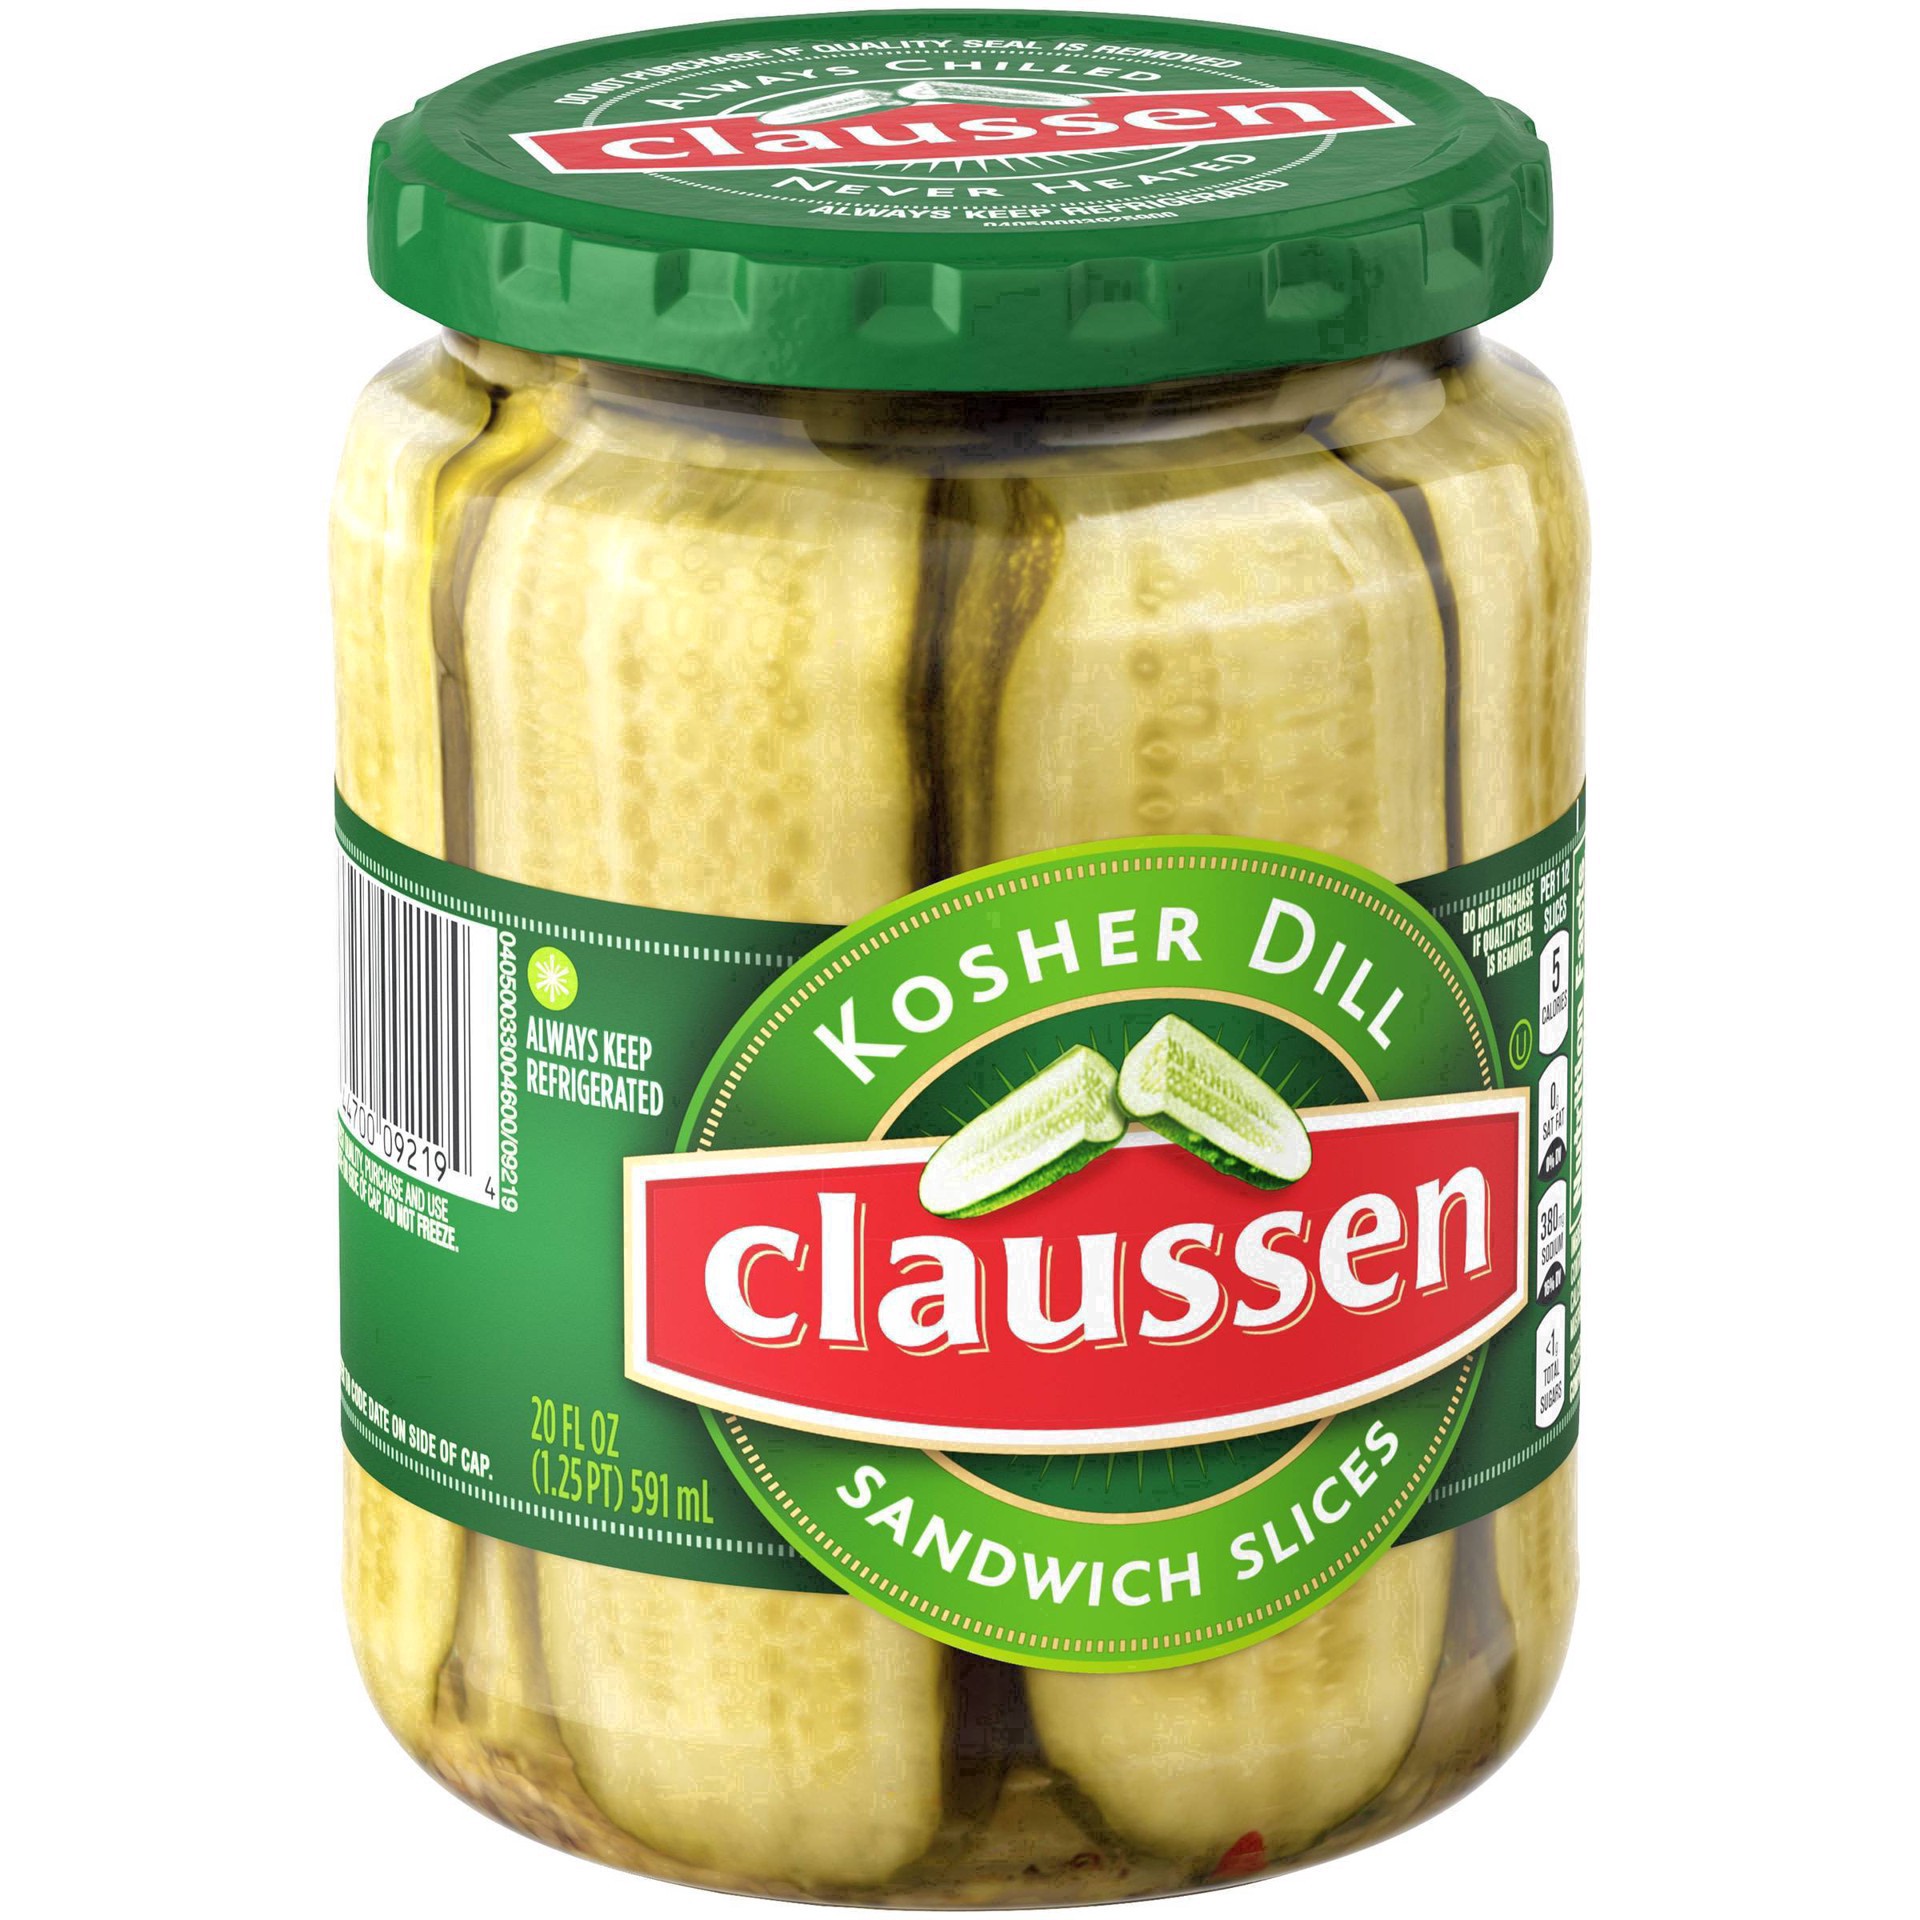 slide 14 of 144, Claussen Kosher Dill Pickle Sandwich Slices, 20 fl. oz. Jar, 20 fl oz